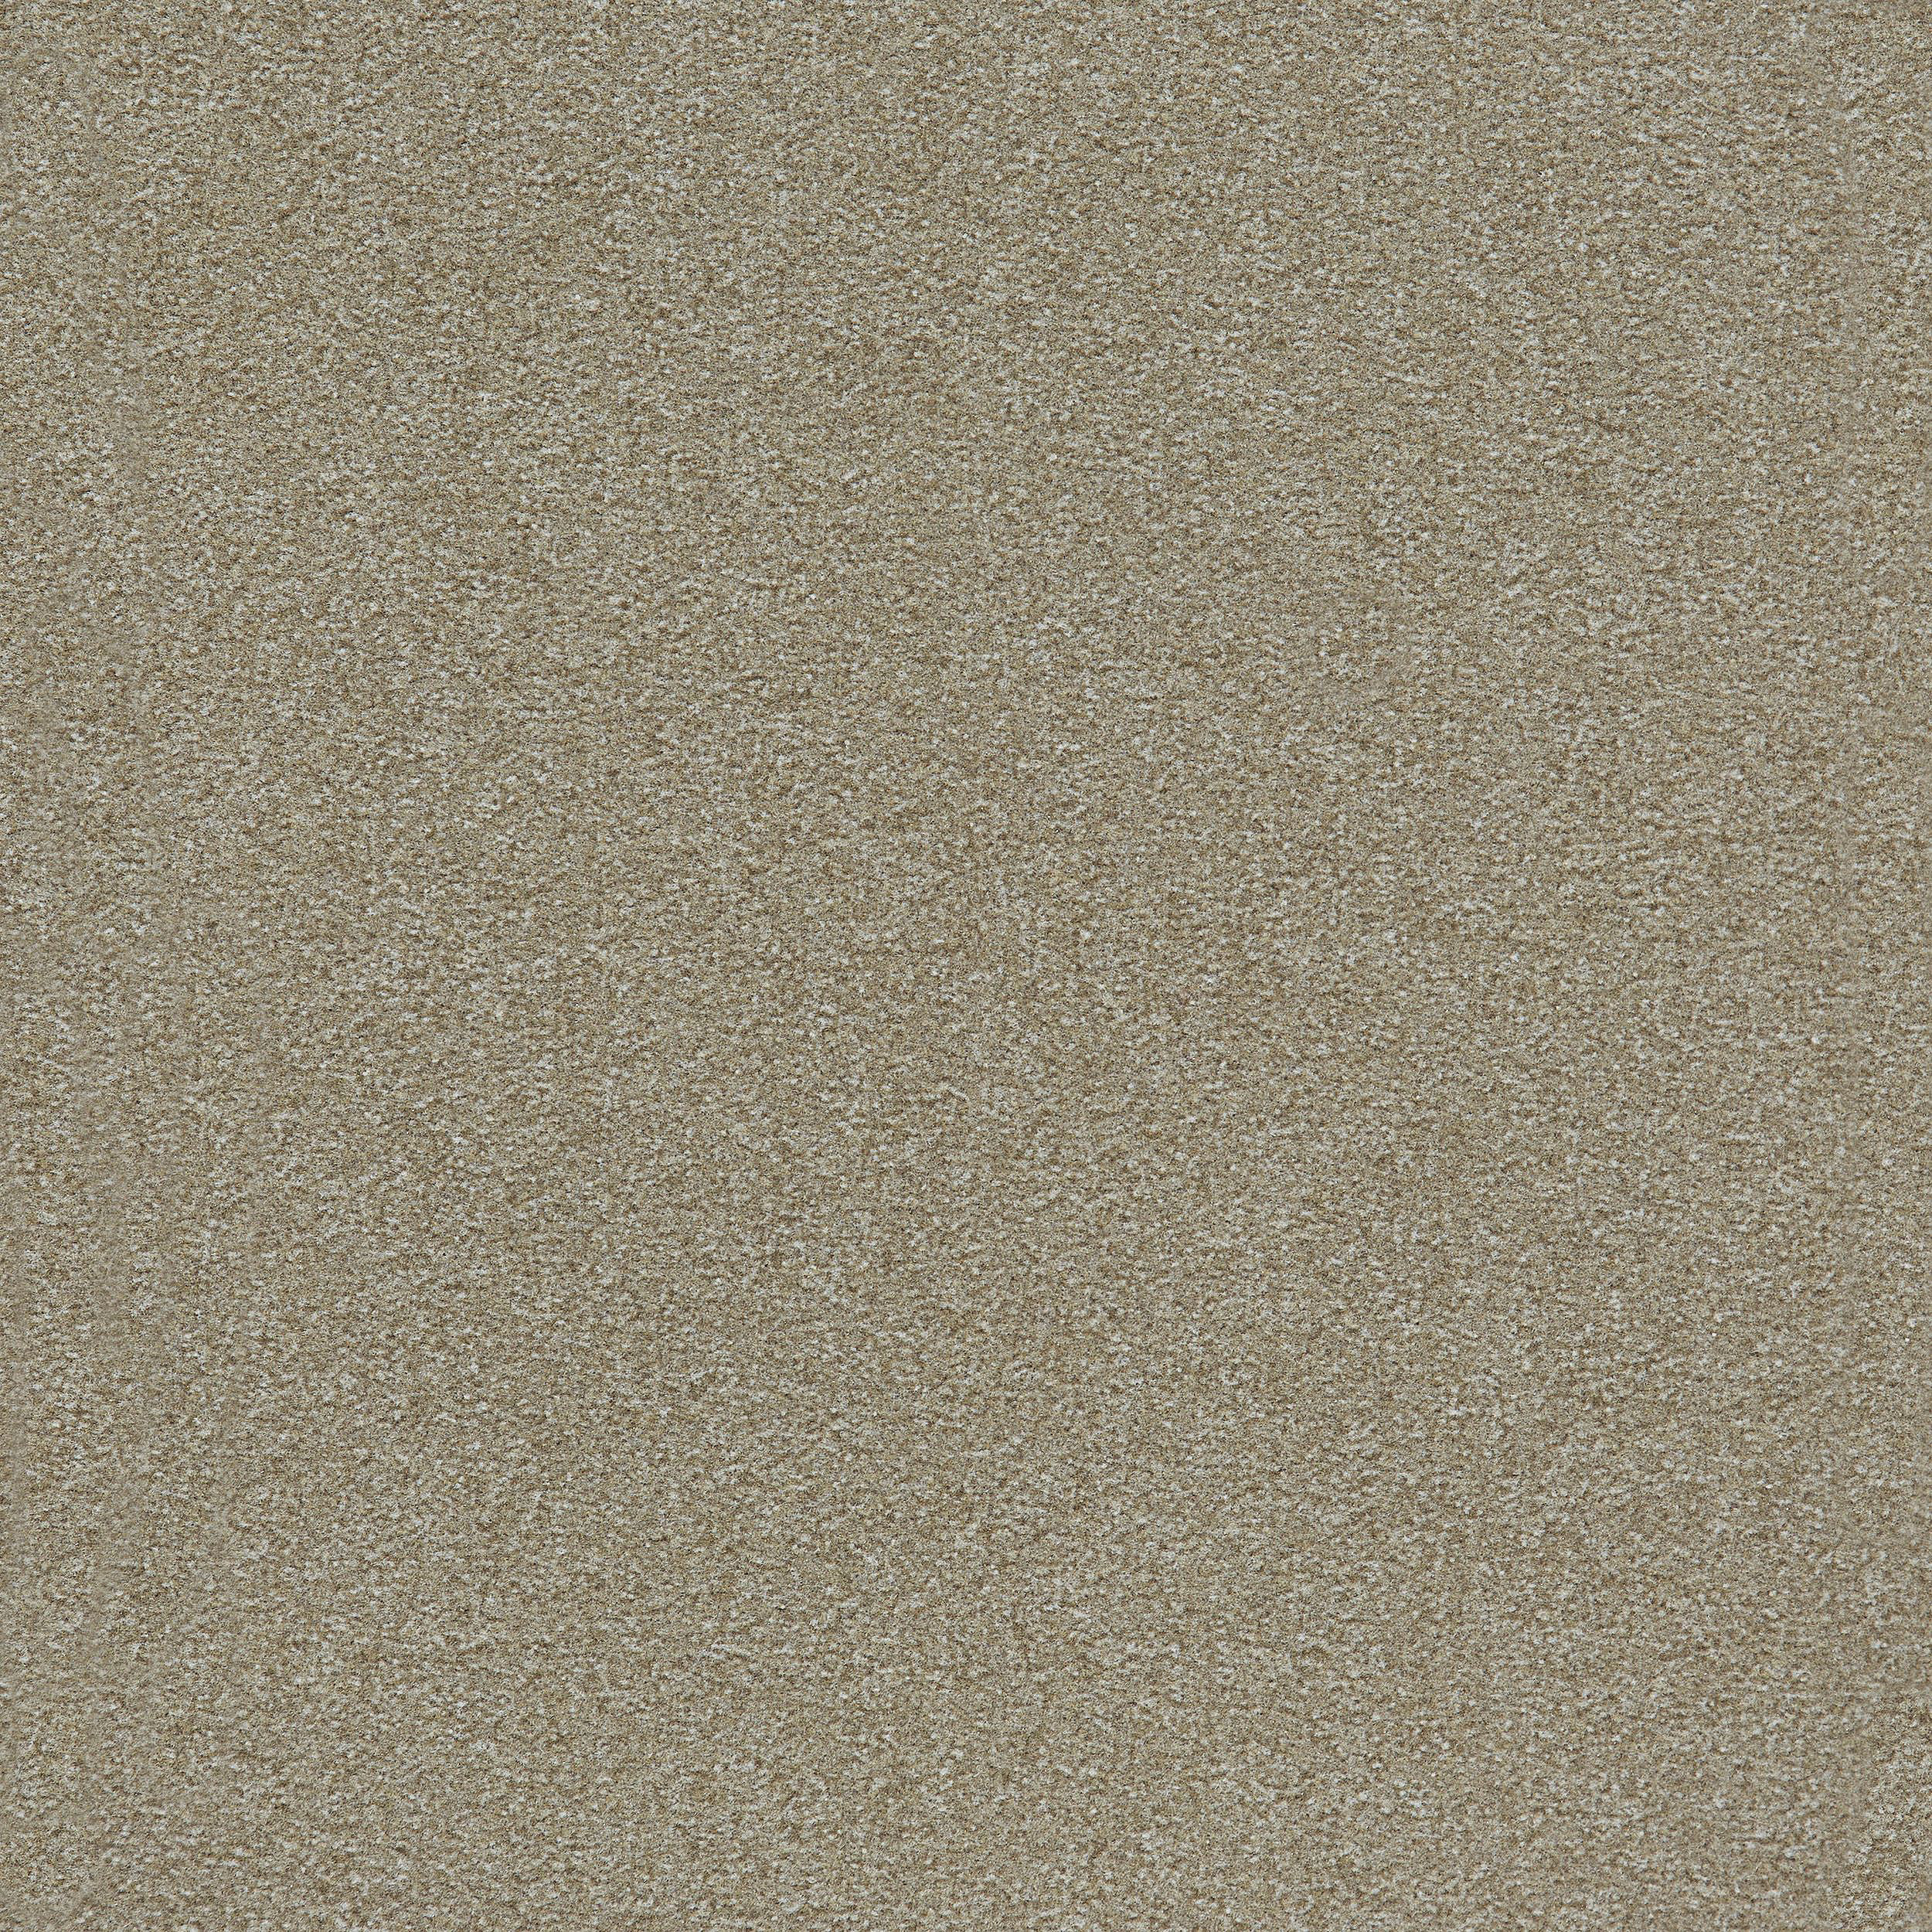 Heuga 725 Carpet Tile In Oyster Bildnummer 12